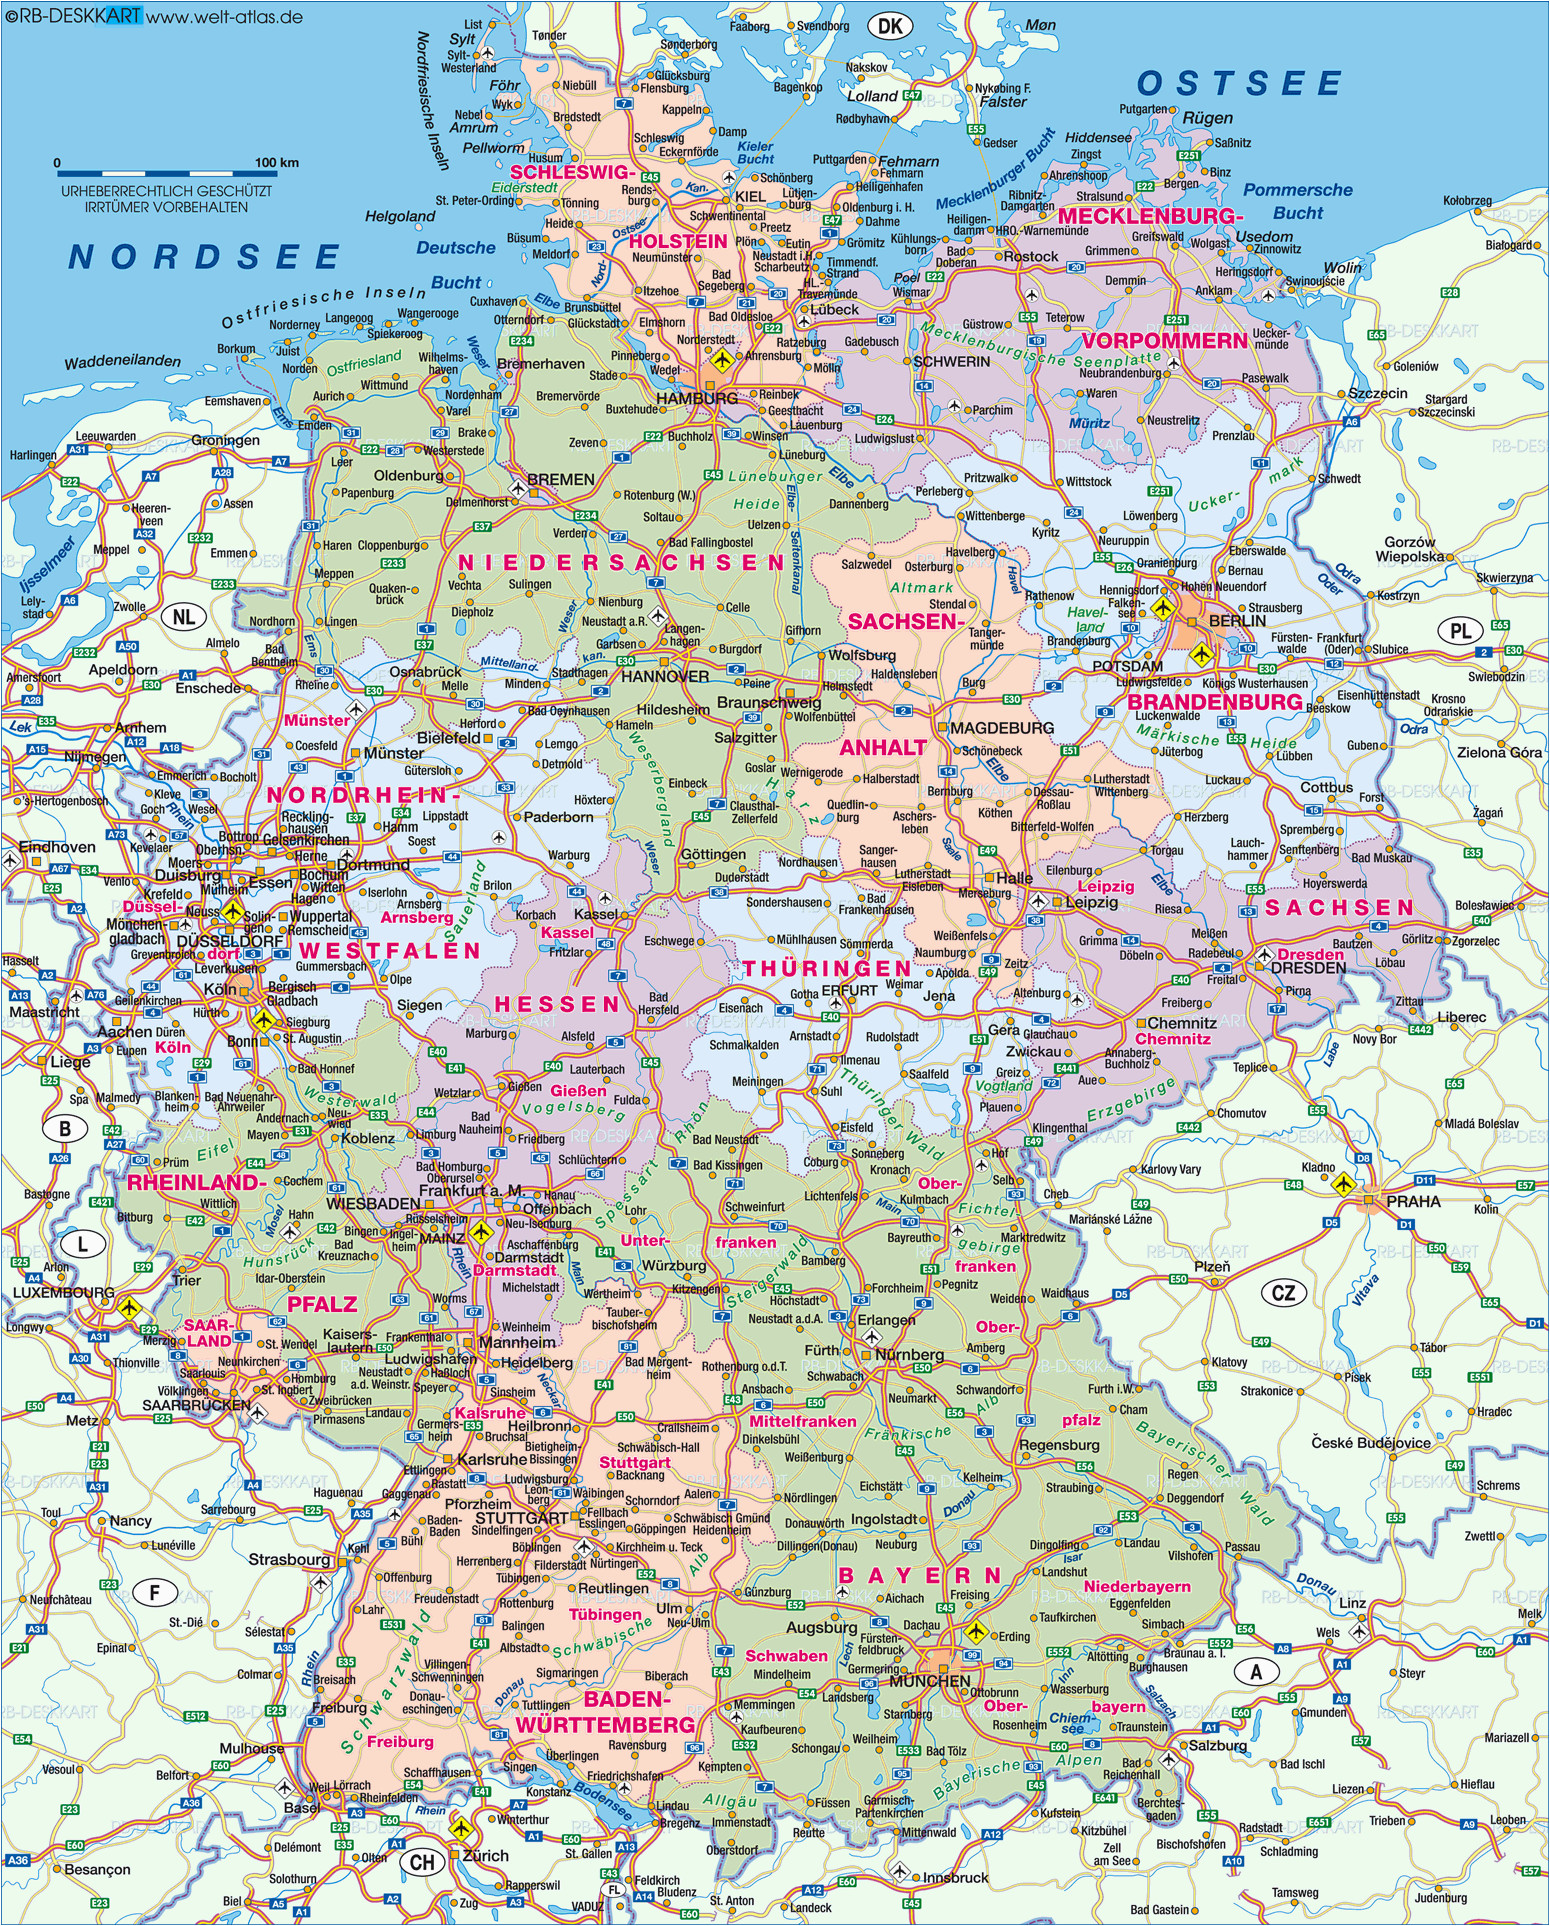 karte von deutschland ancestry map germany travel